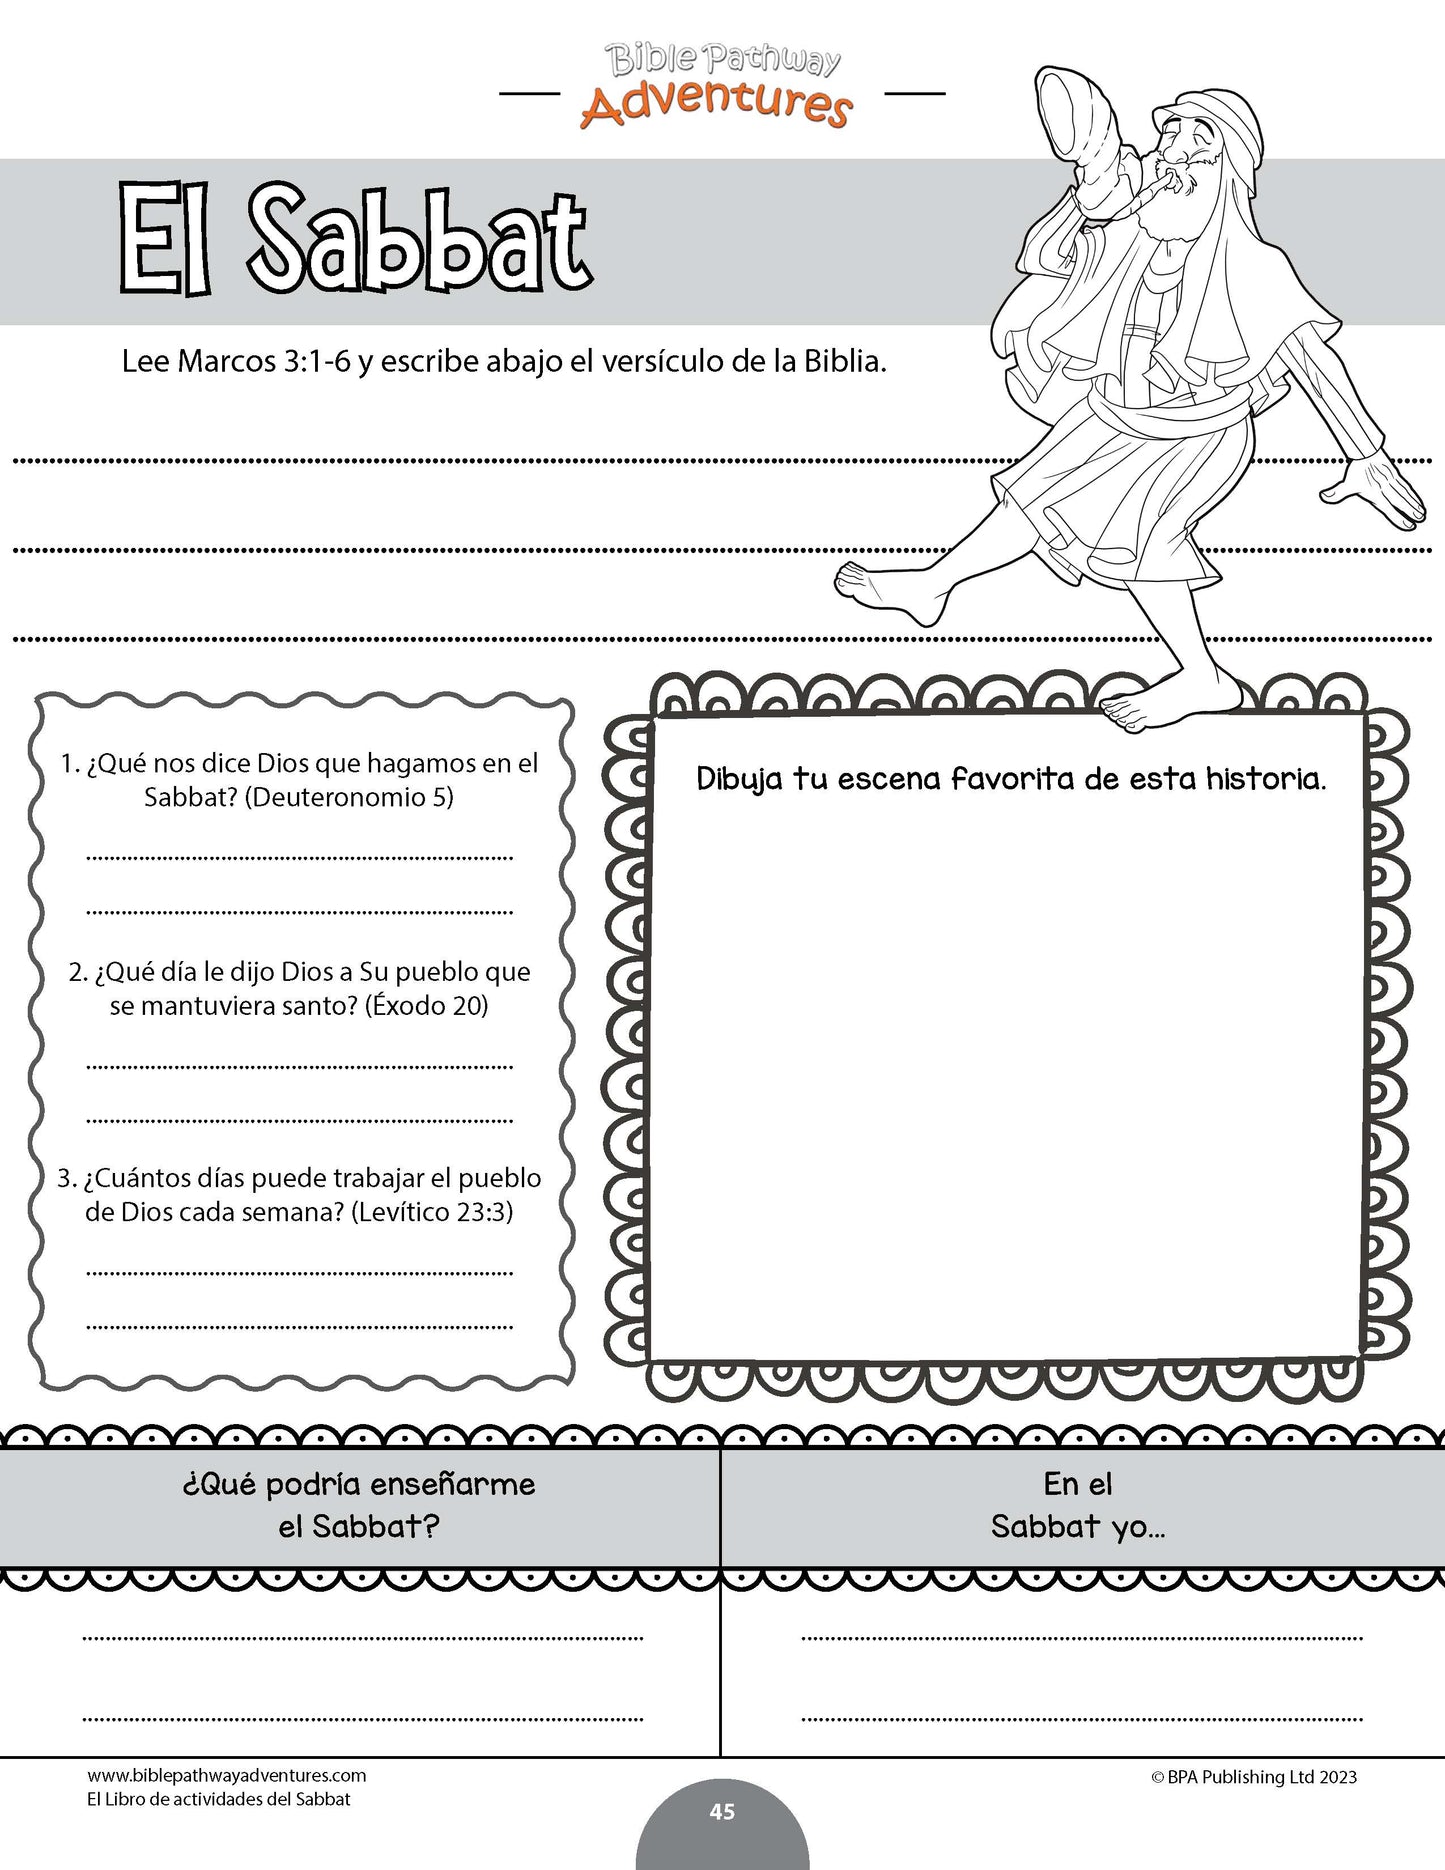 El libro de actividades del Sabbat